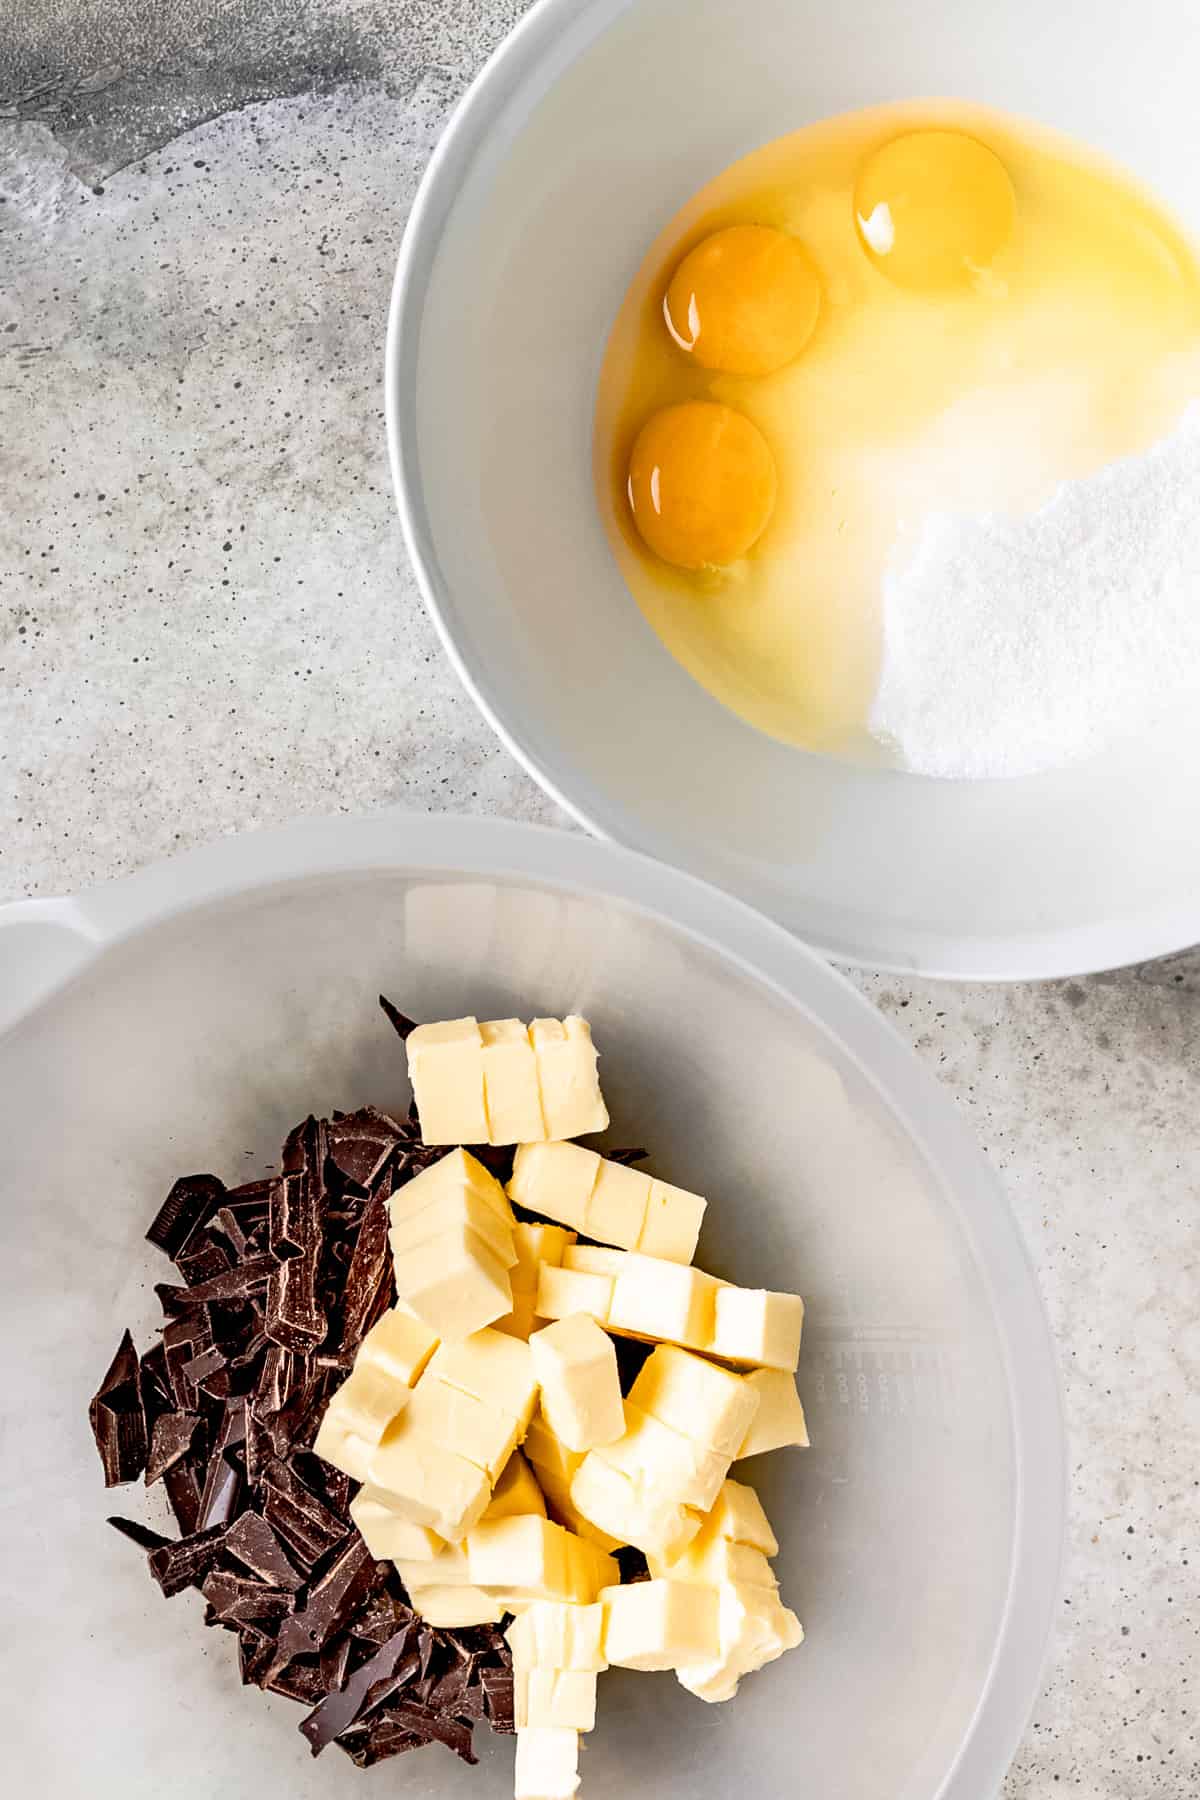 Ingredients for making brownies including dark chocolate.